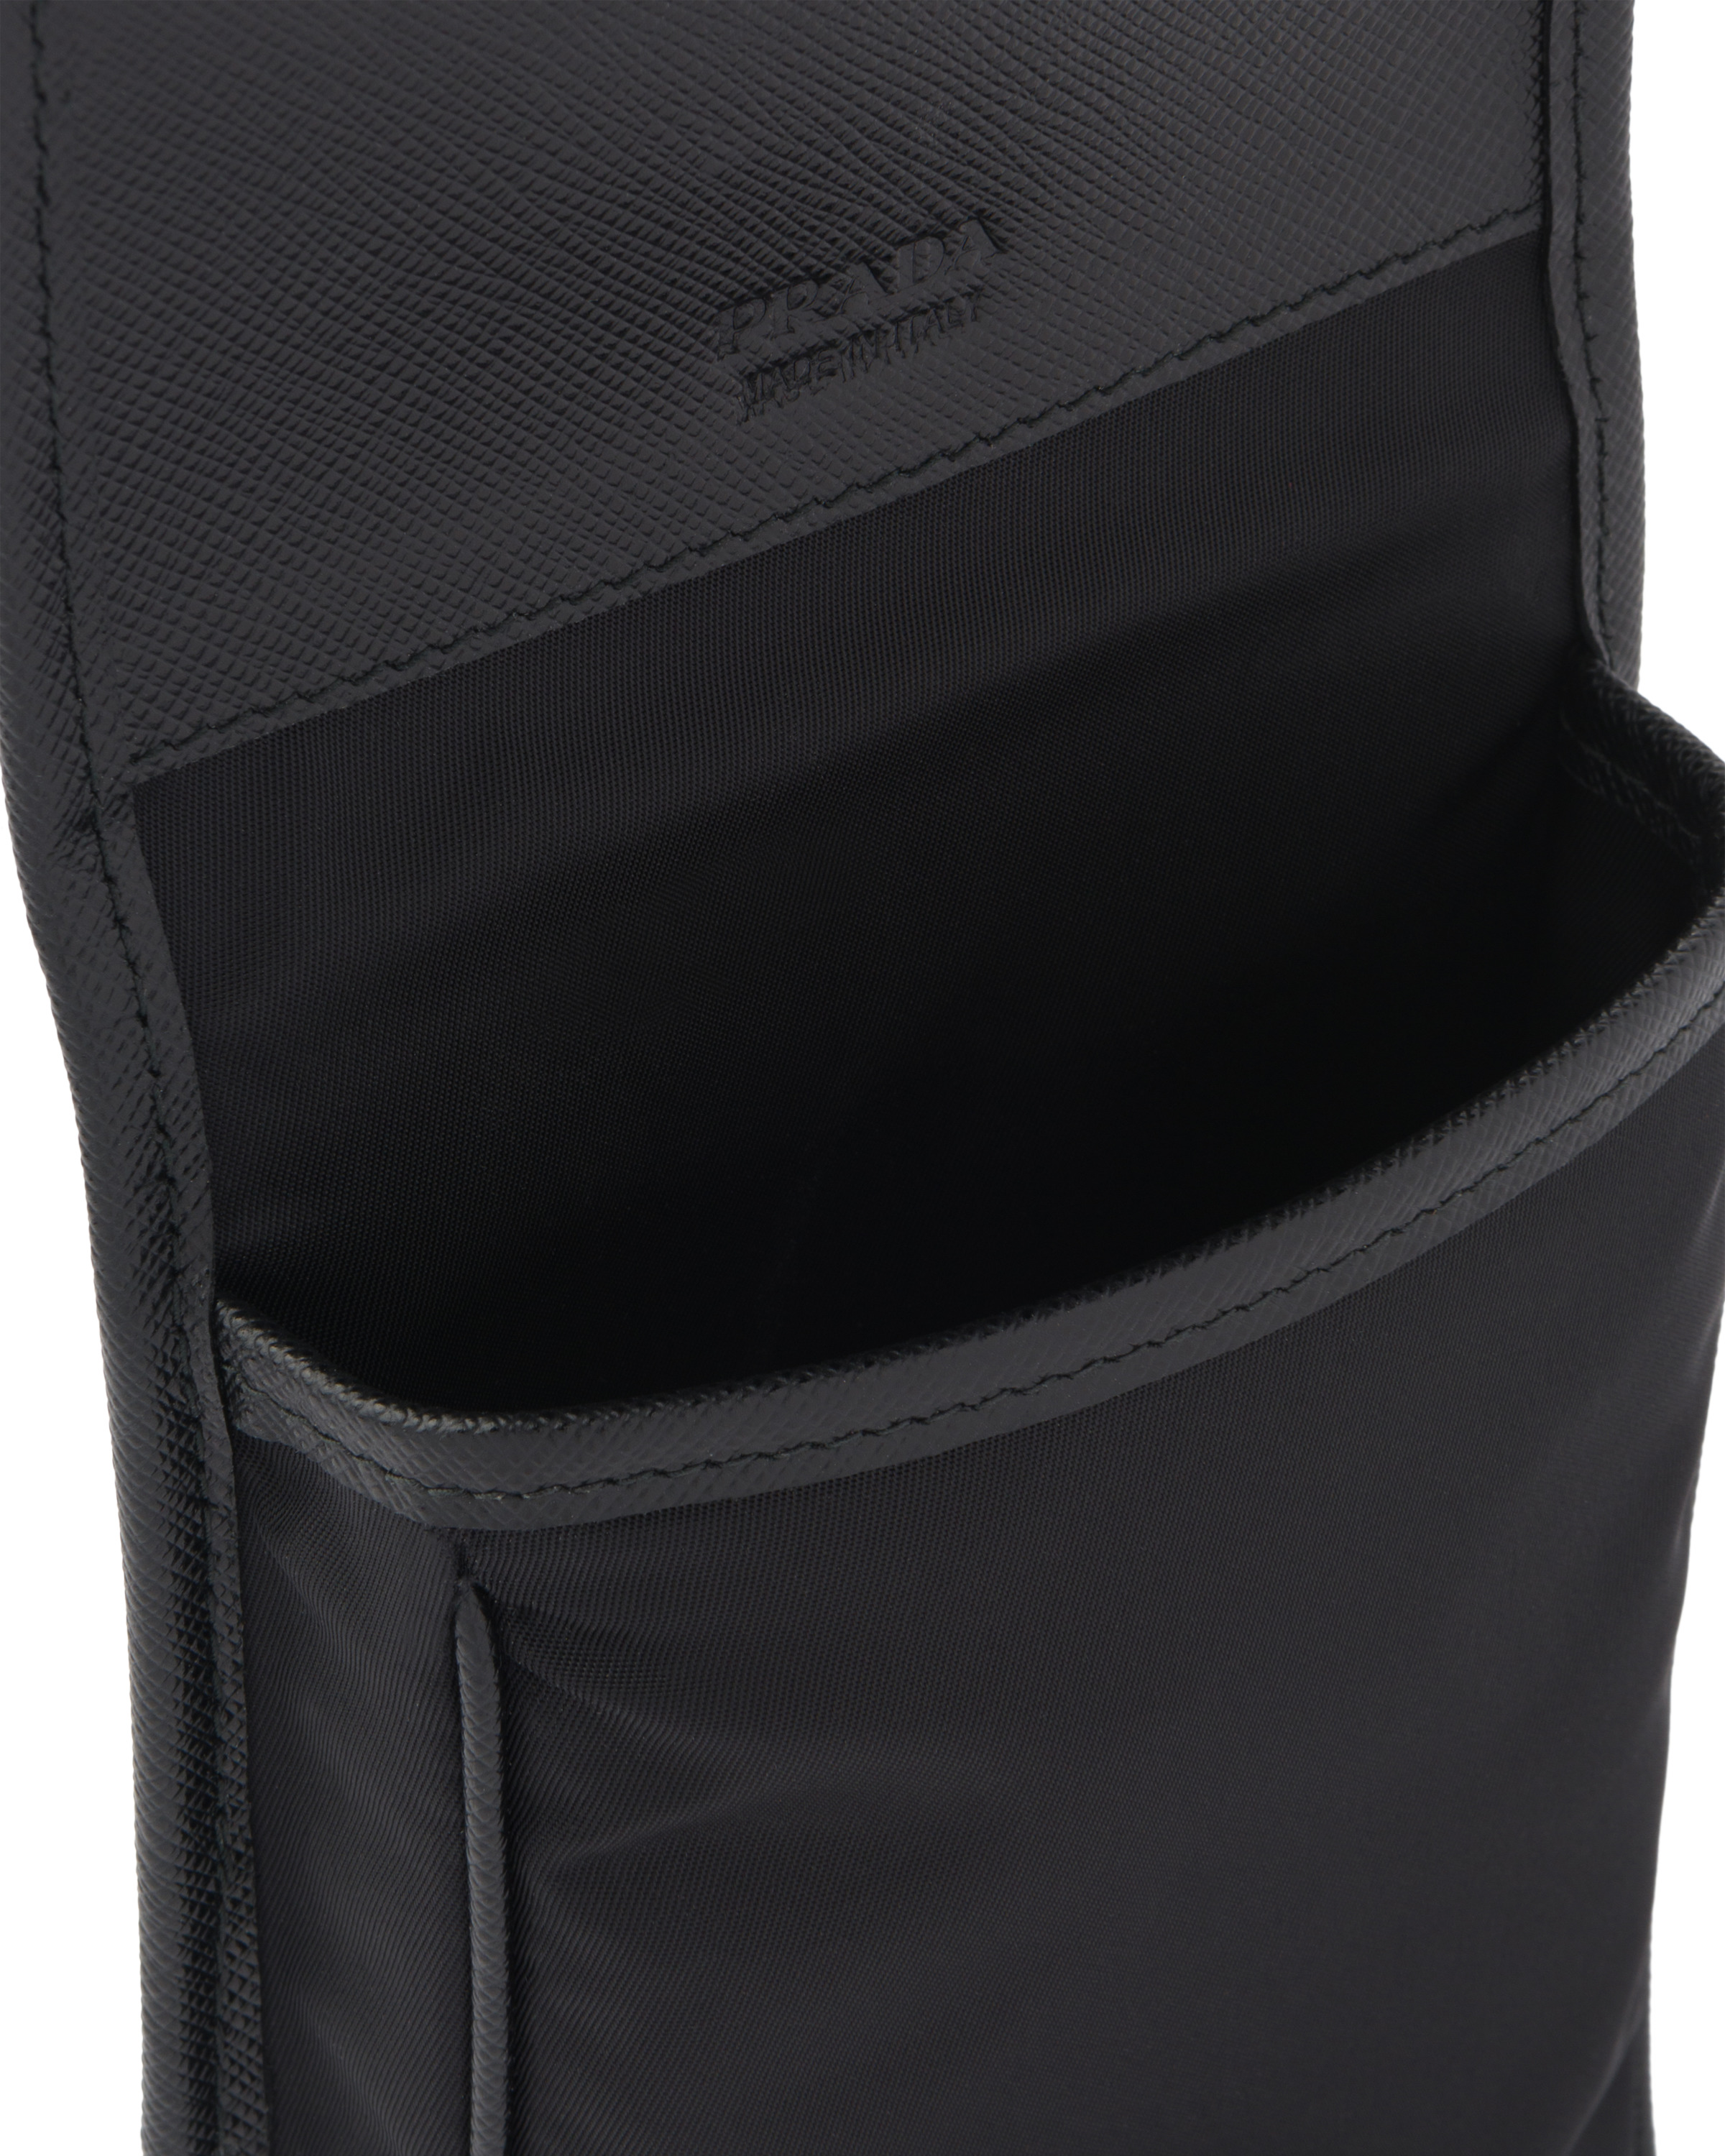 Re-Nylon and Saffiano leather smartphone case - 2